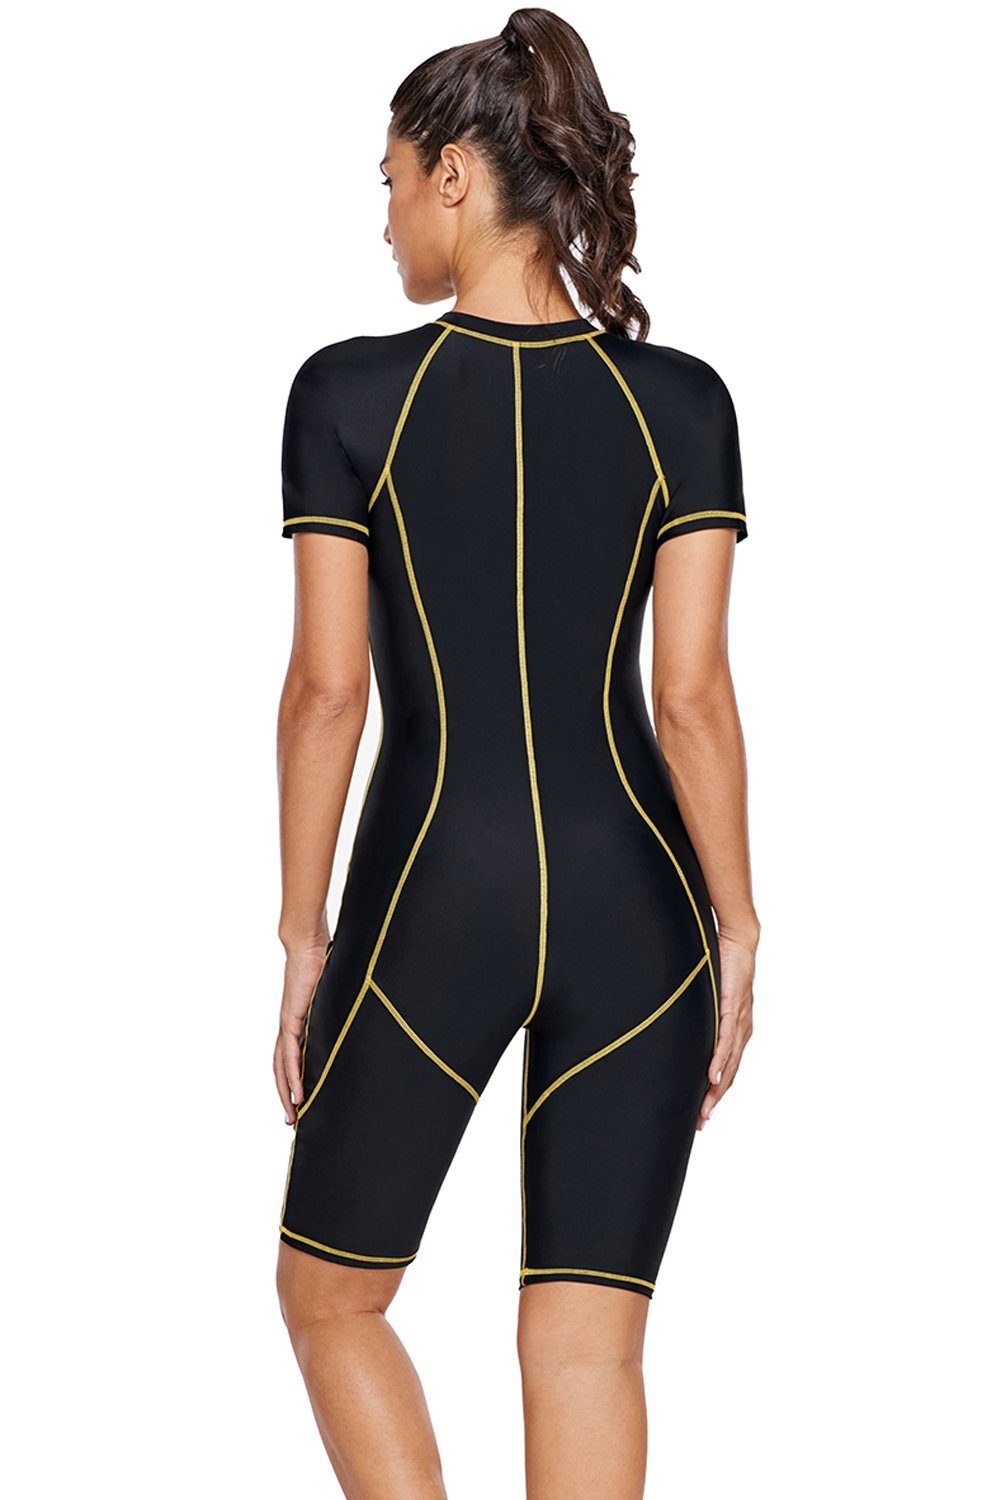 KaleaBoutique Long Sleeve Black UPF 50+ Swim Wear Rash Guard One-Piece Wet Suit - KaleaBoutique.com